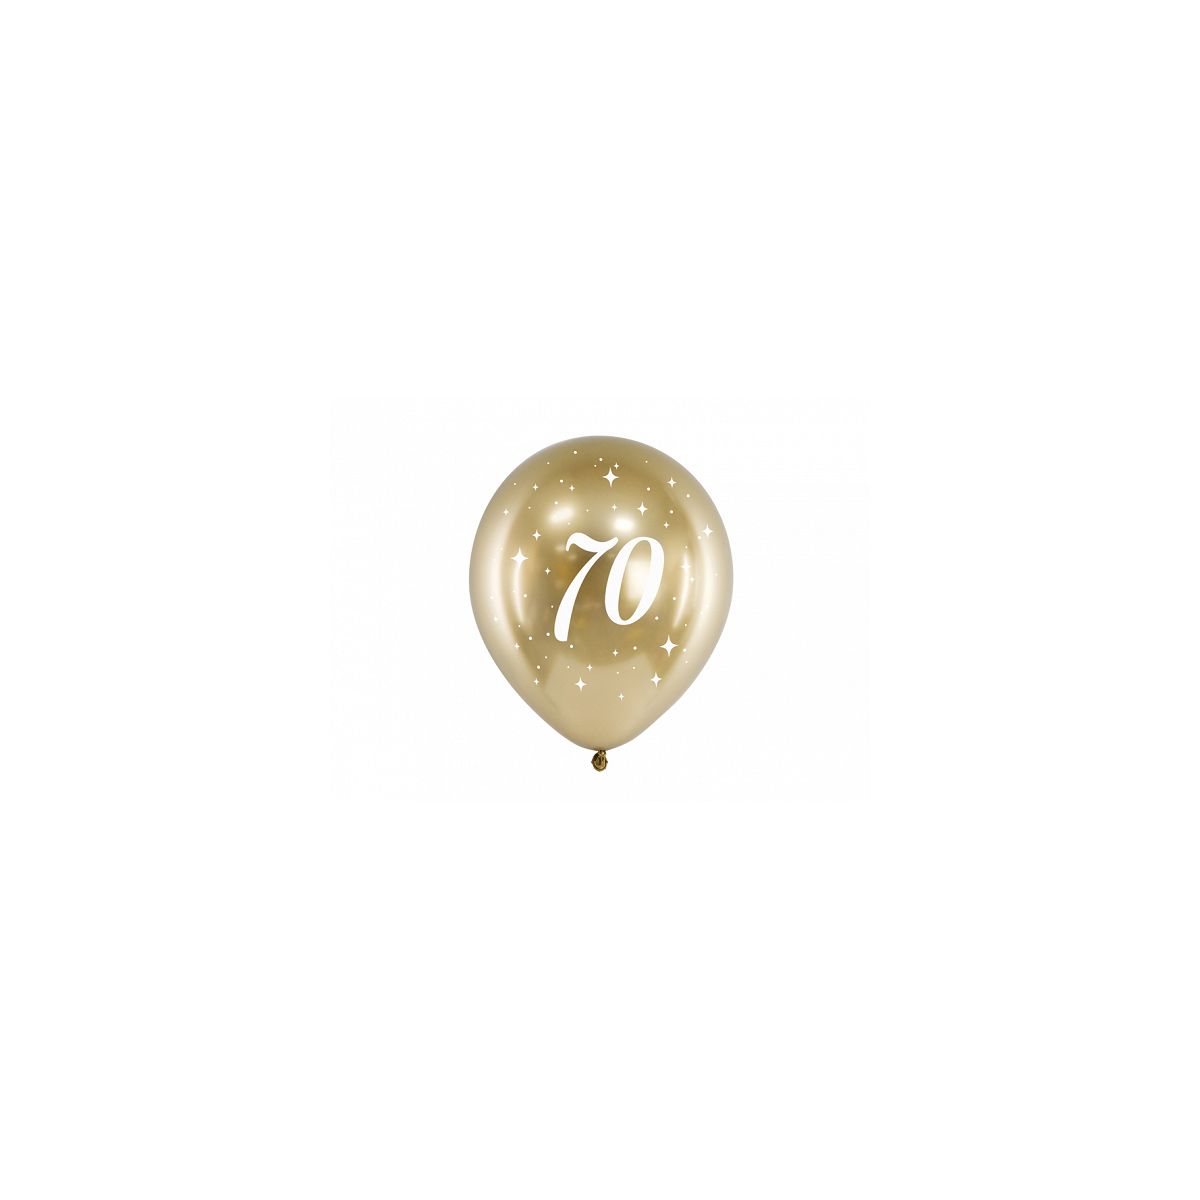 Balon gumowy Partydeco Glossy 70 urodziny złoty 300mm (CHB14-1-70-019-6)